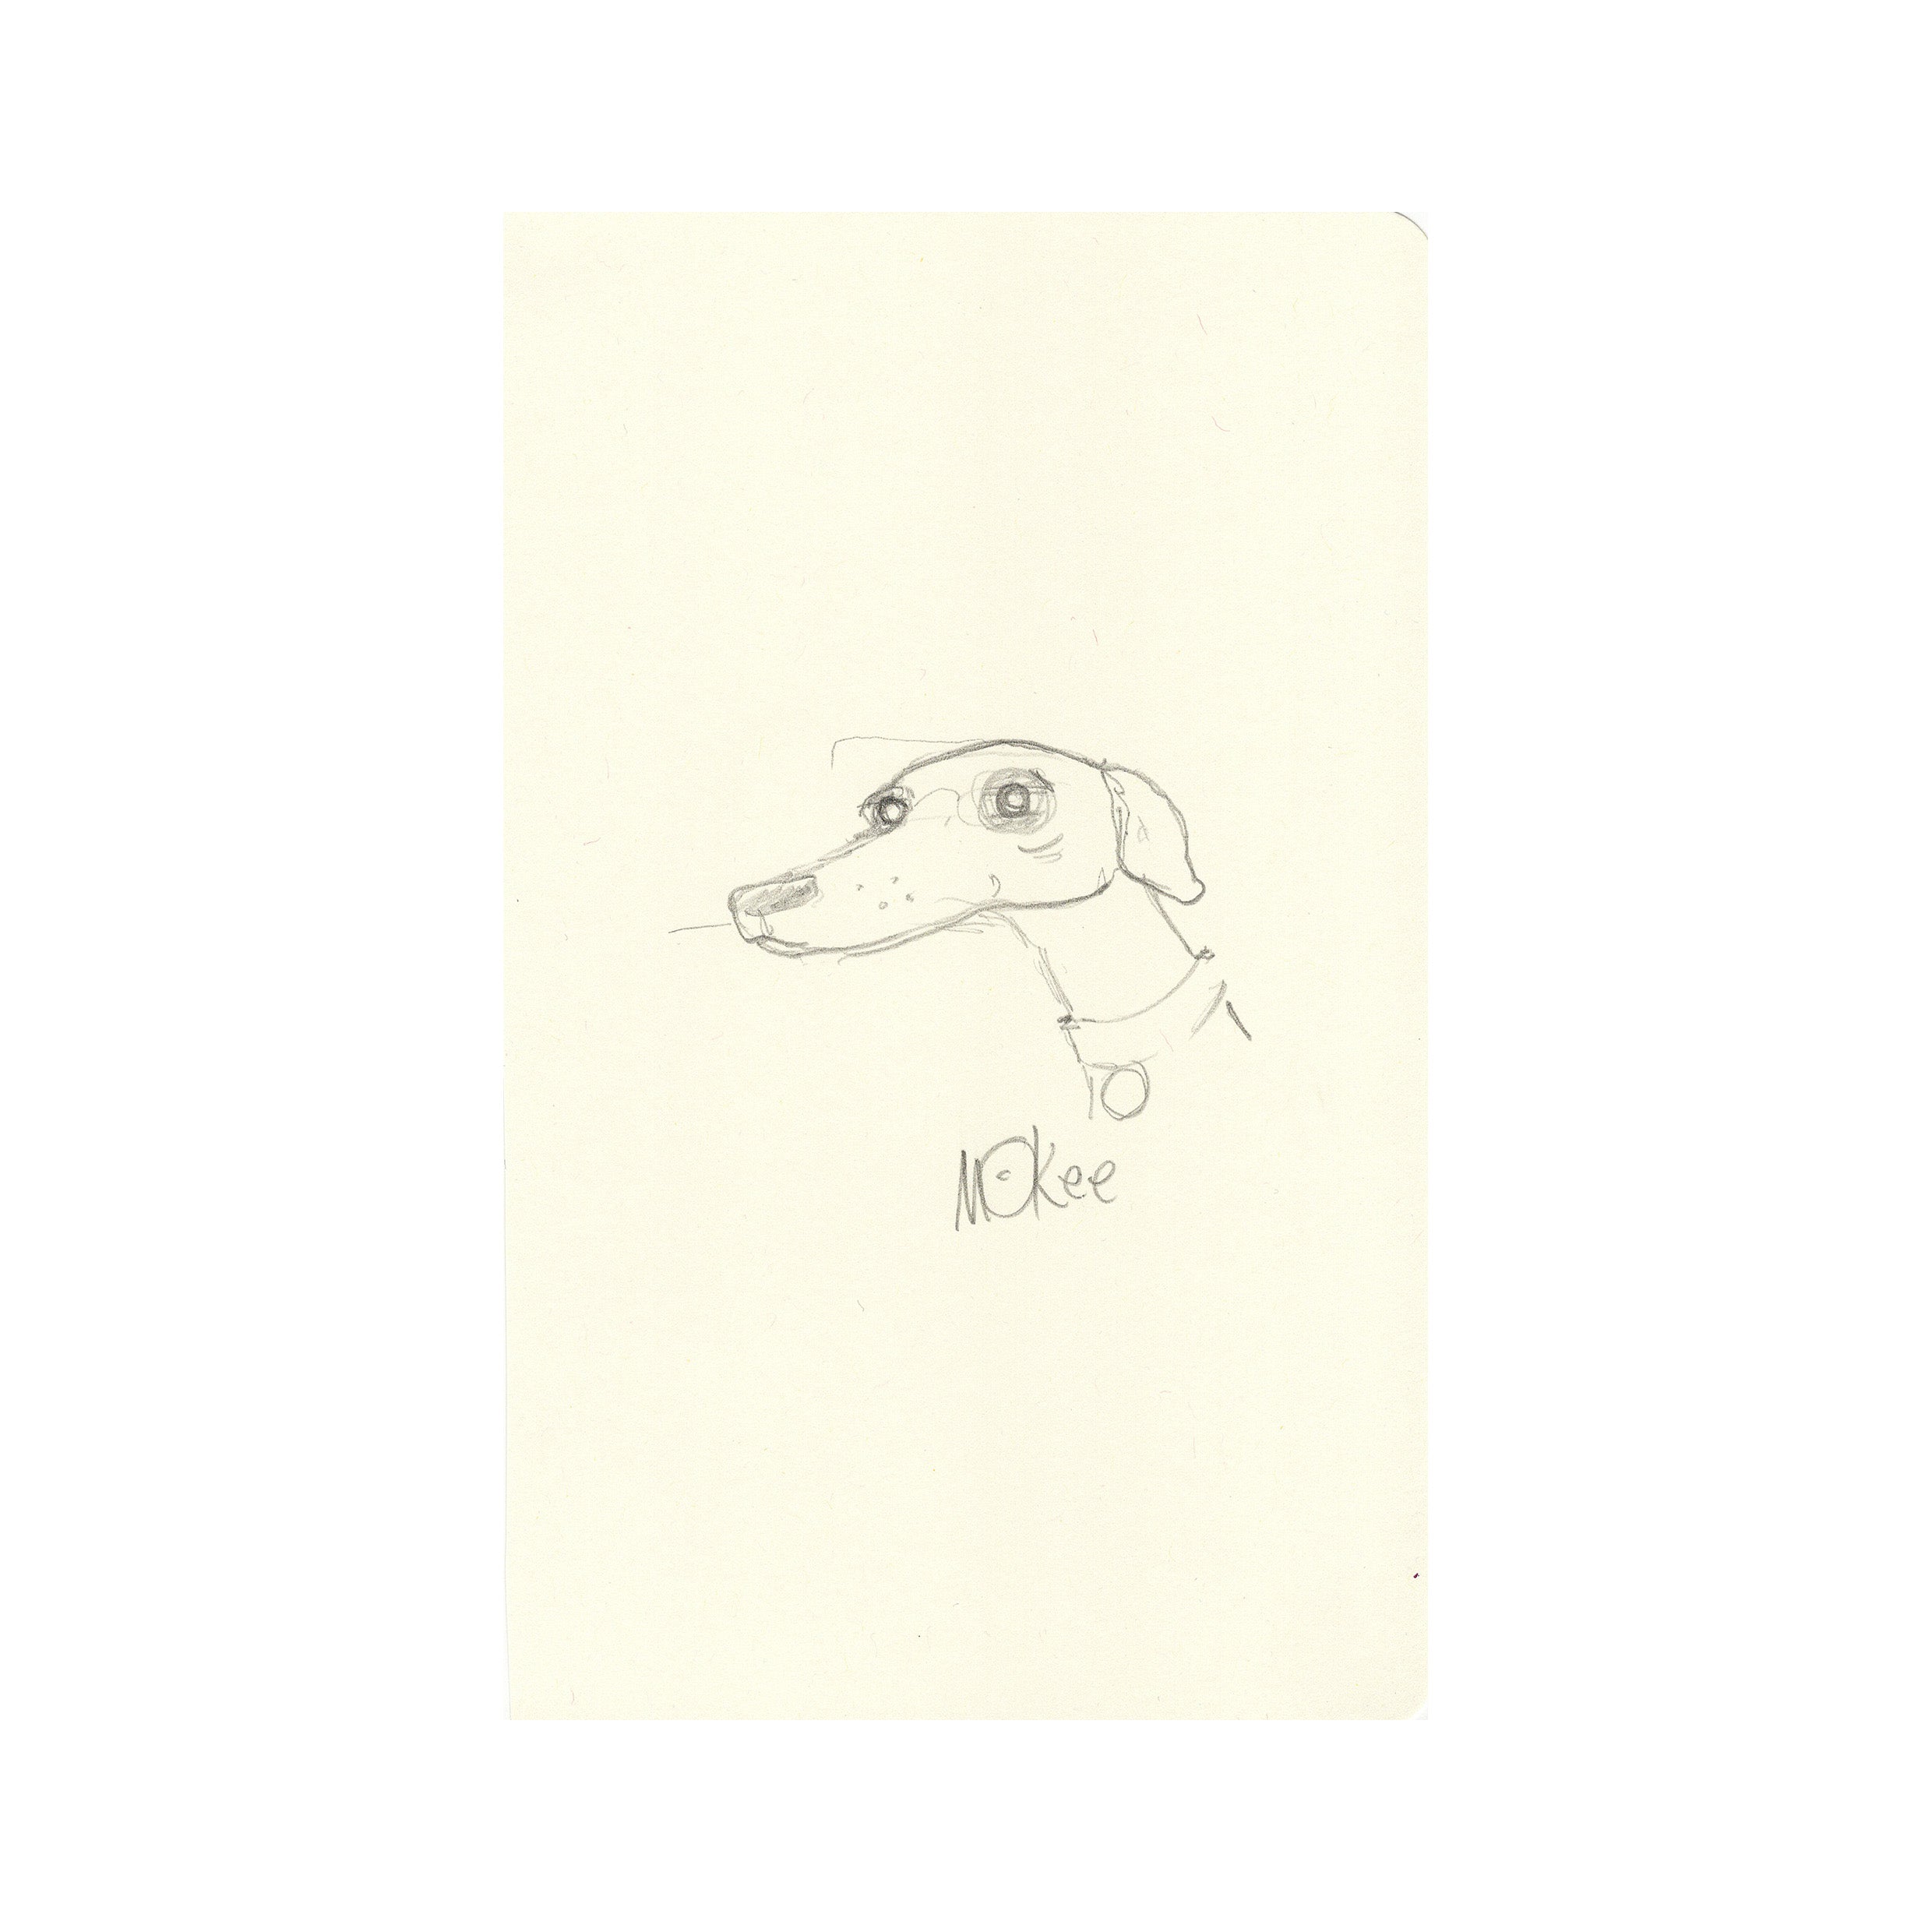 Study of Frank the Dog - Original Sketch